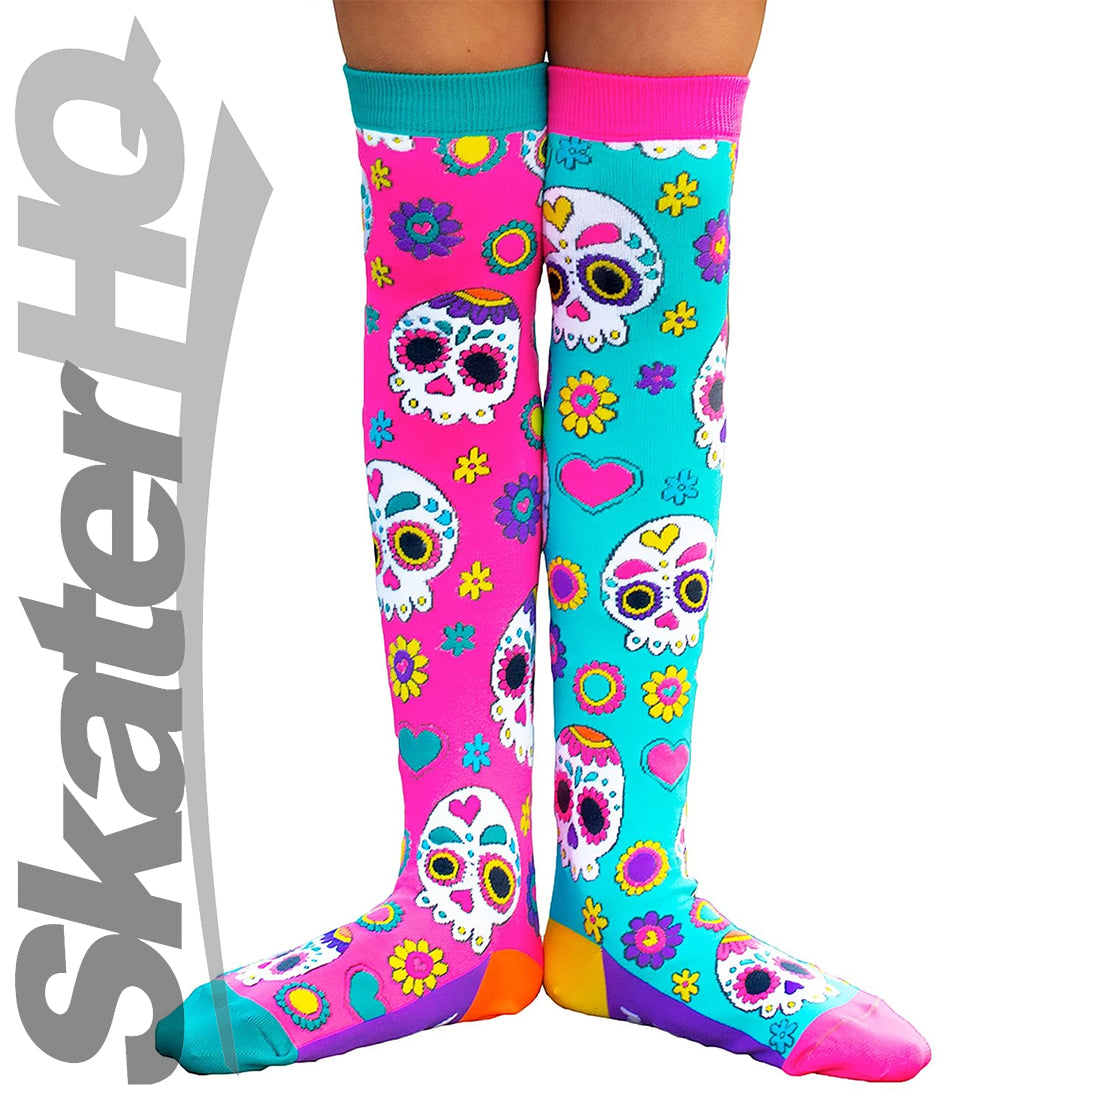 MADMIA - Sugar Skulls - Knee High Socks Apparel Socks